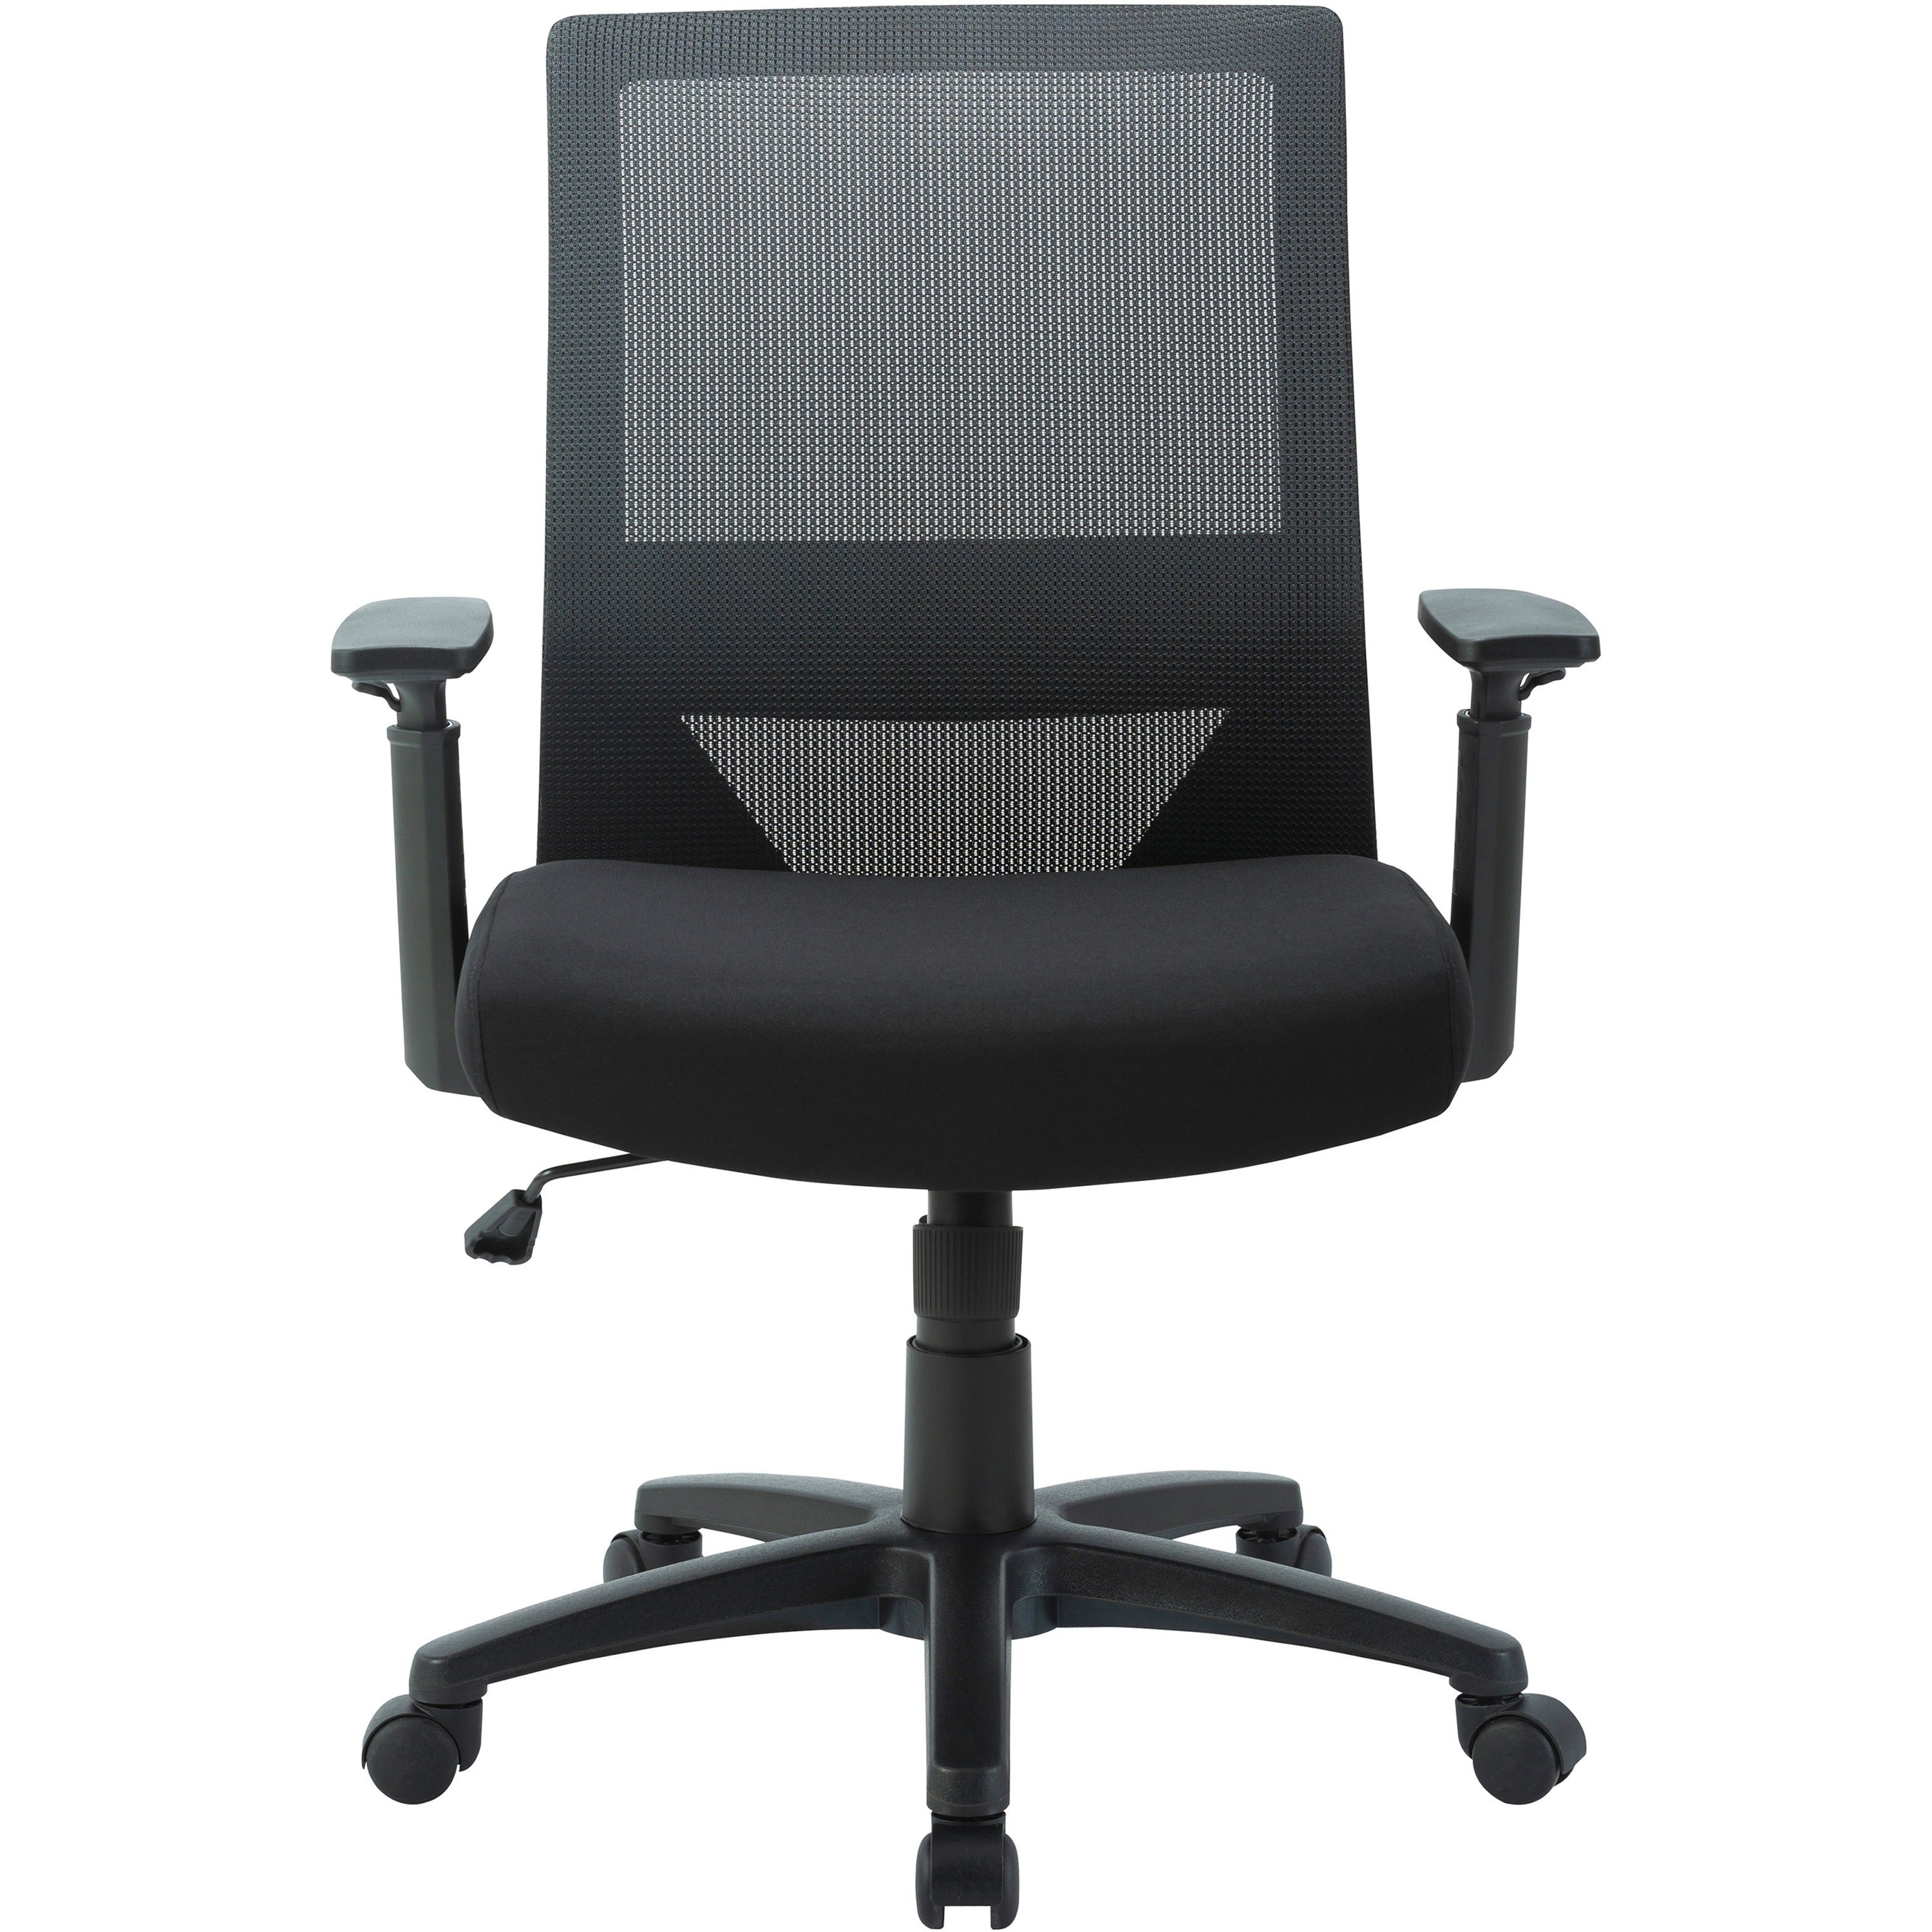 lorell-soho-mesh-mid-back-task-chair-gray-fabric-seat-gray-fabric-back-mid-back-5-star-base-black-armrest-1-each_llr41840 - 3